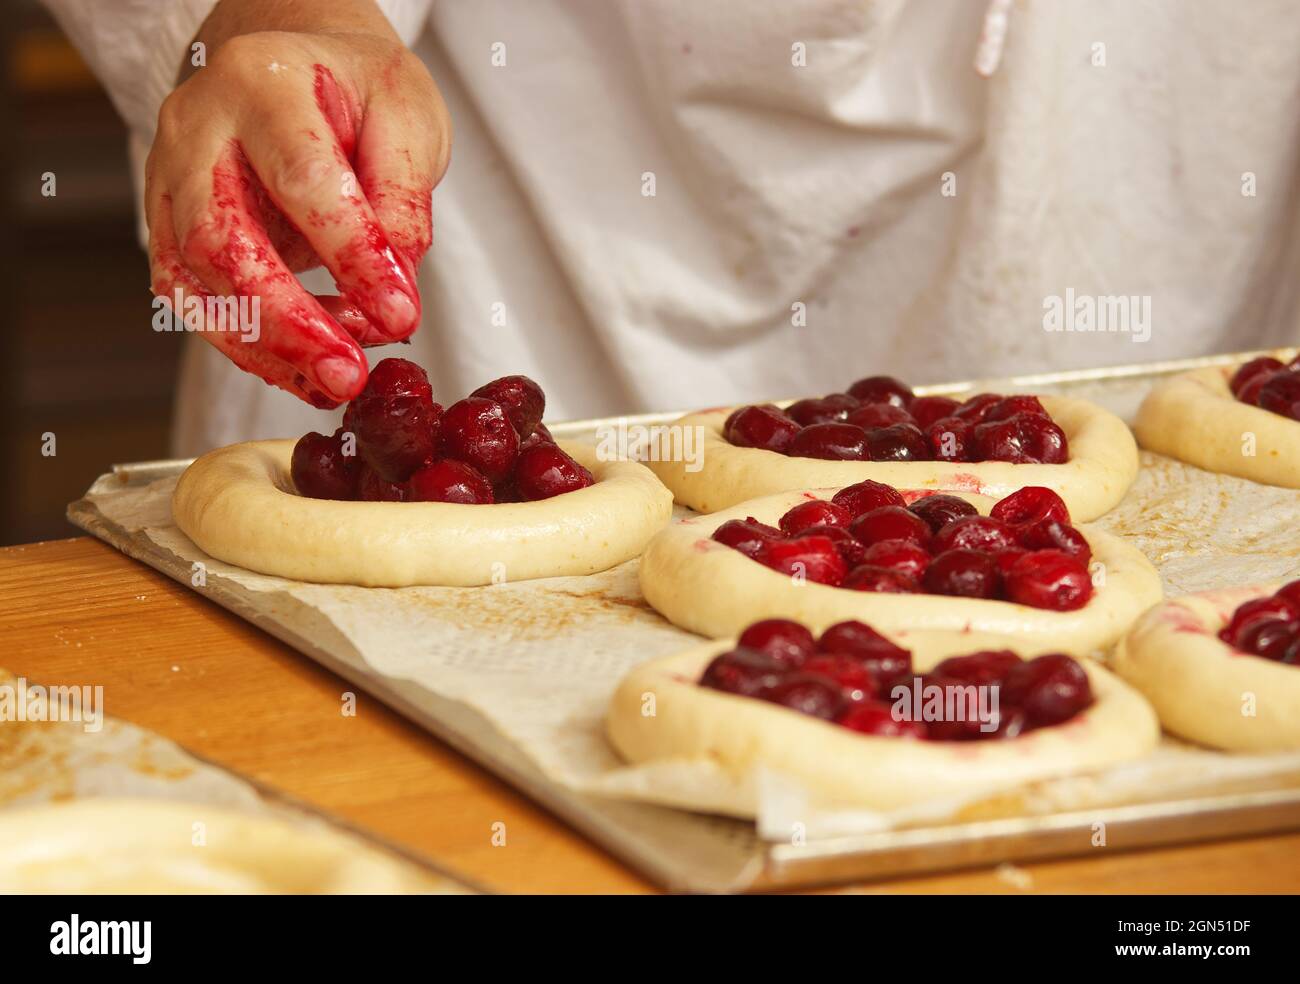 La donna nella foto sta facendo torte di frutta riempite. Mani che riempiono la pasta di lievito con fragole. Lavoro nel panificio. Foto Stock